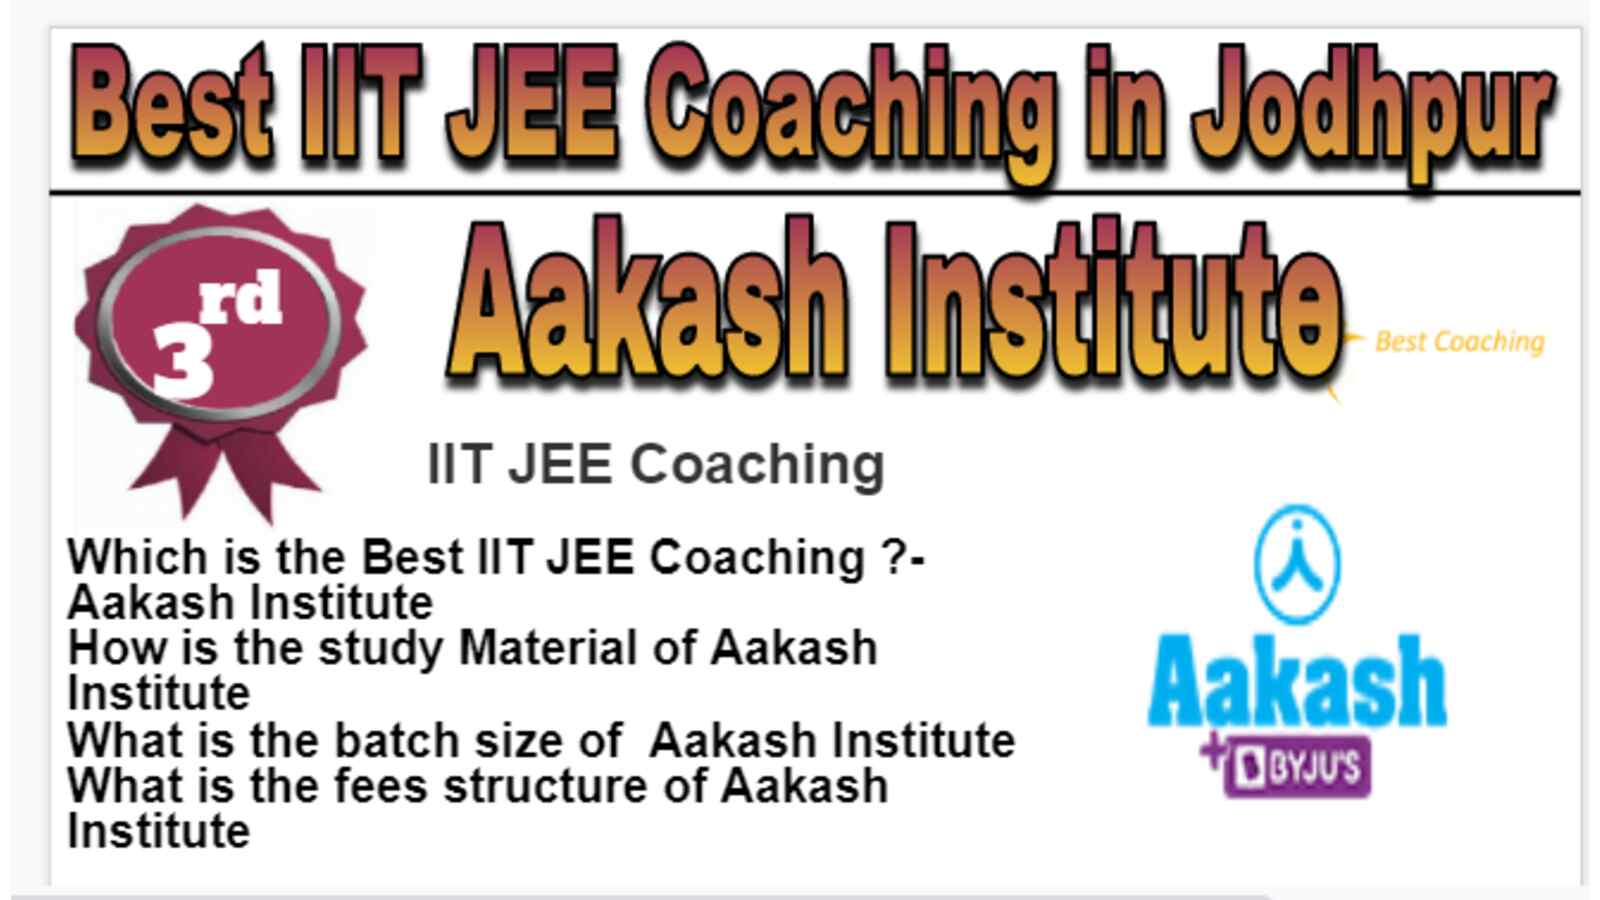 Rank 3 Best IIT JEE Coaching in Jodhpur